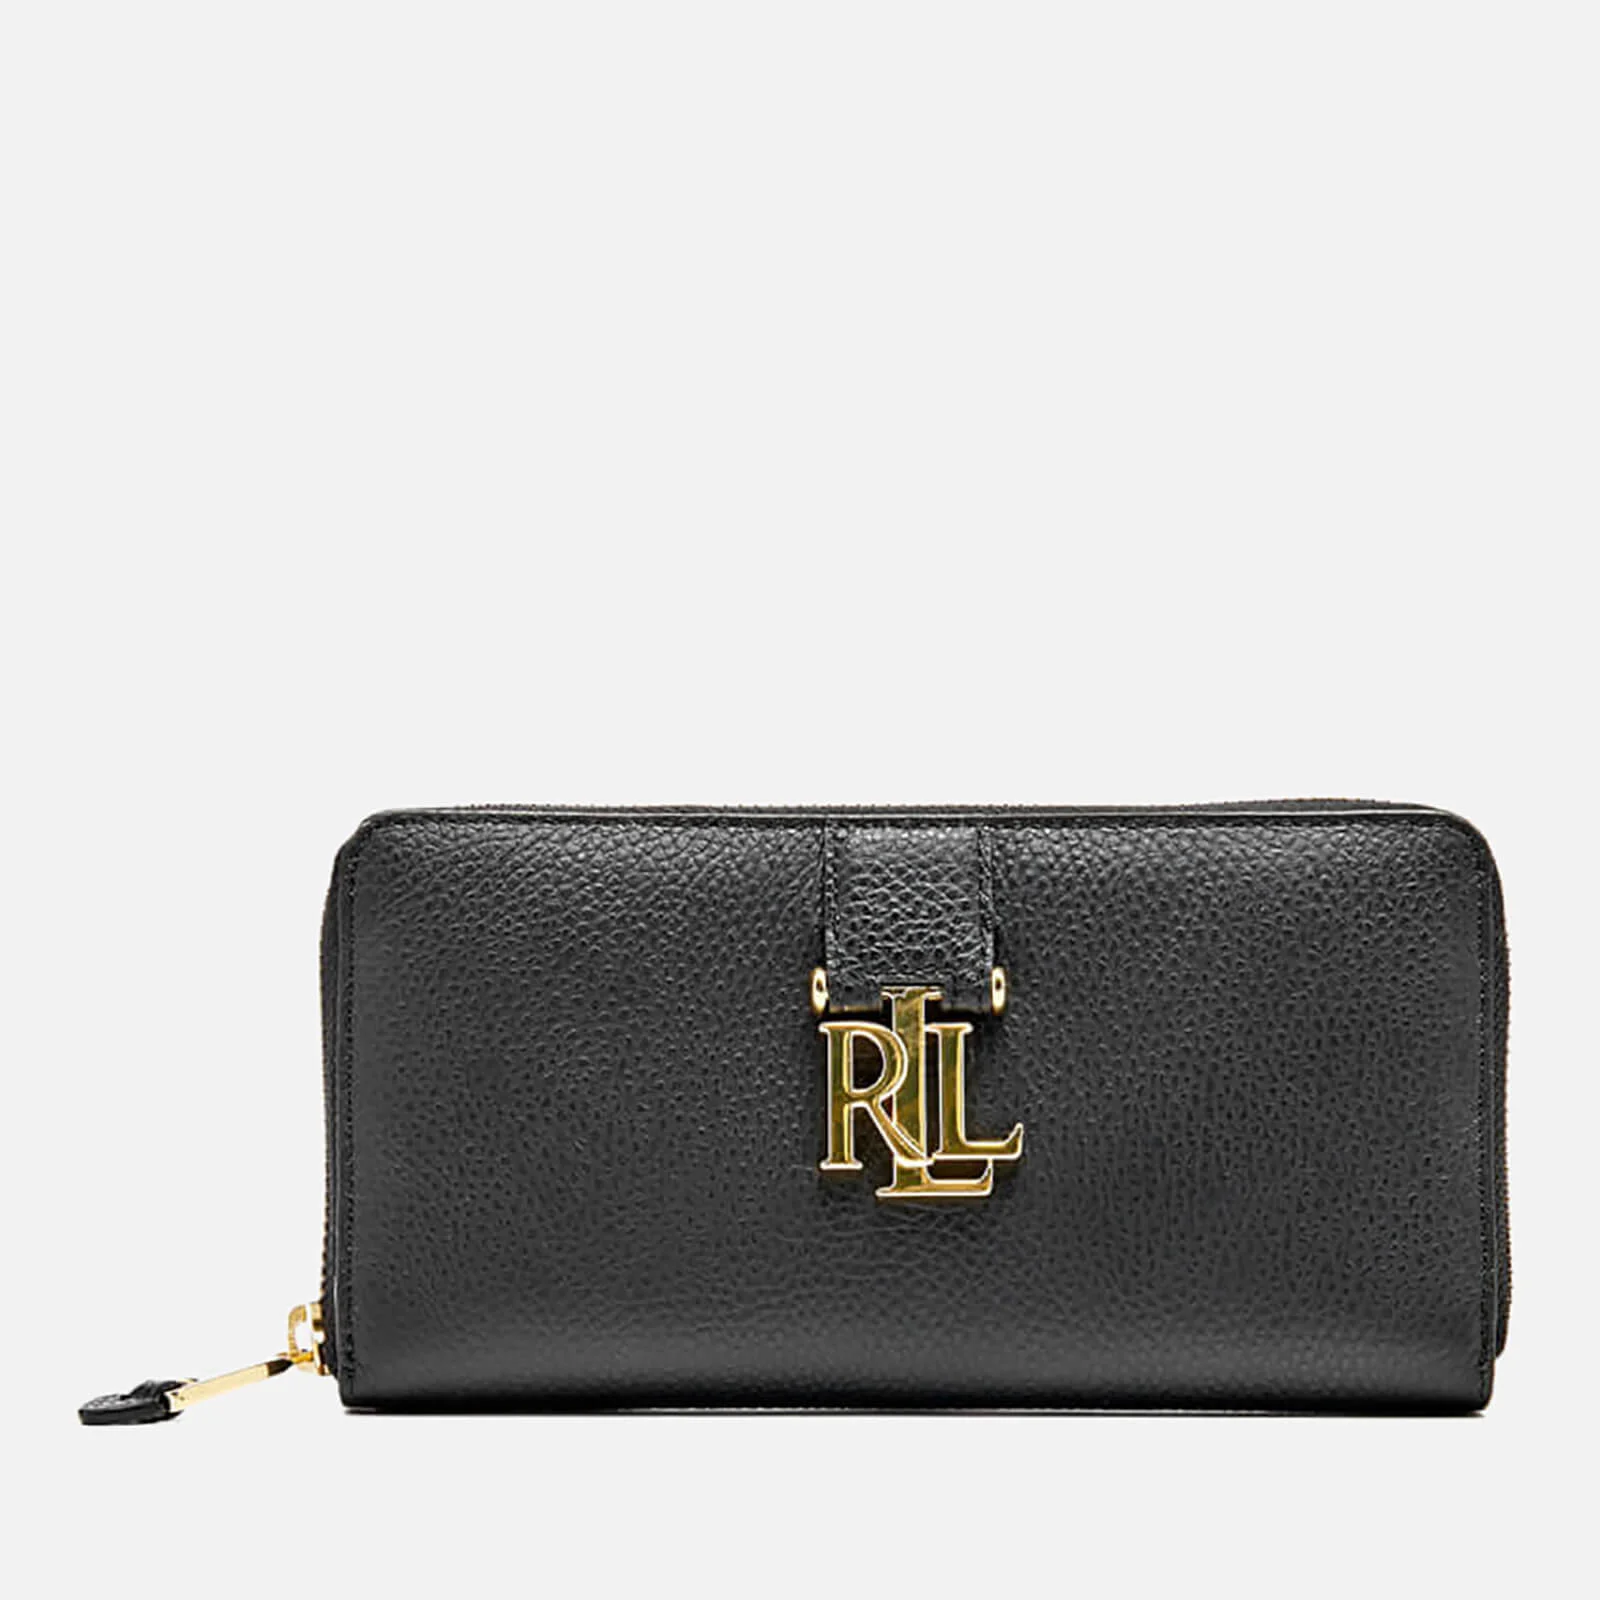 Lauren Ralph Lauren Women's Carrington Zip Wallet - Black Image 1